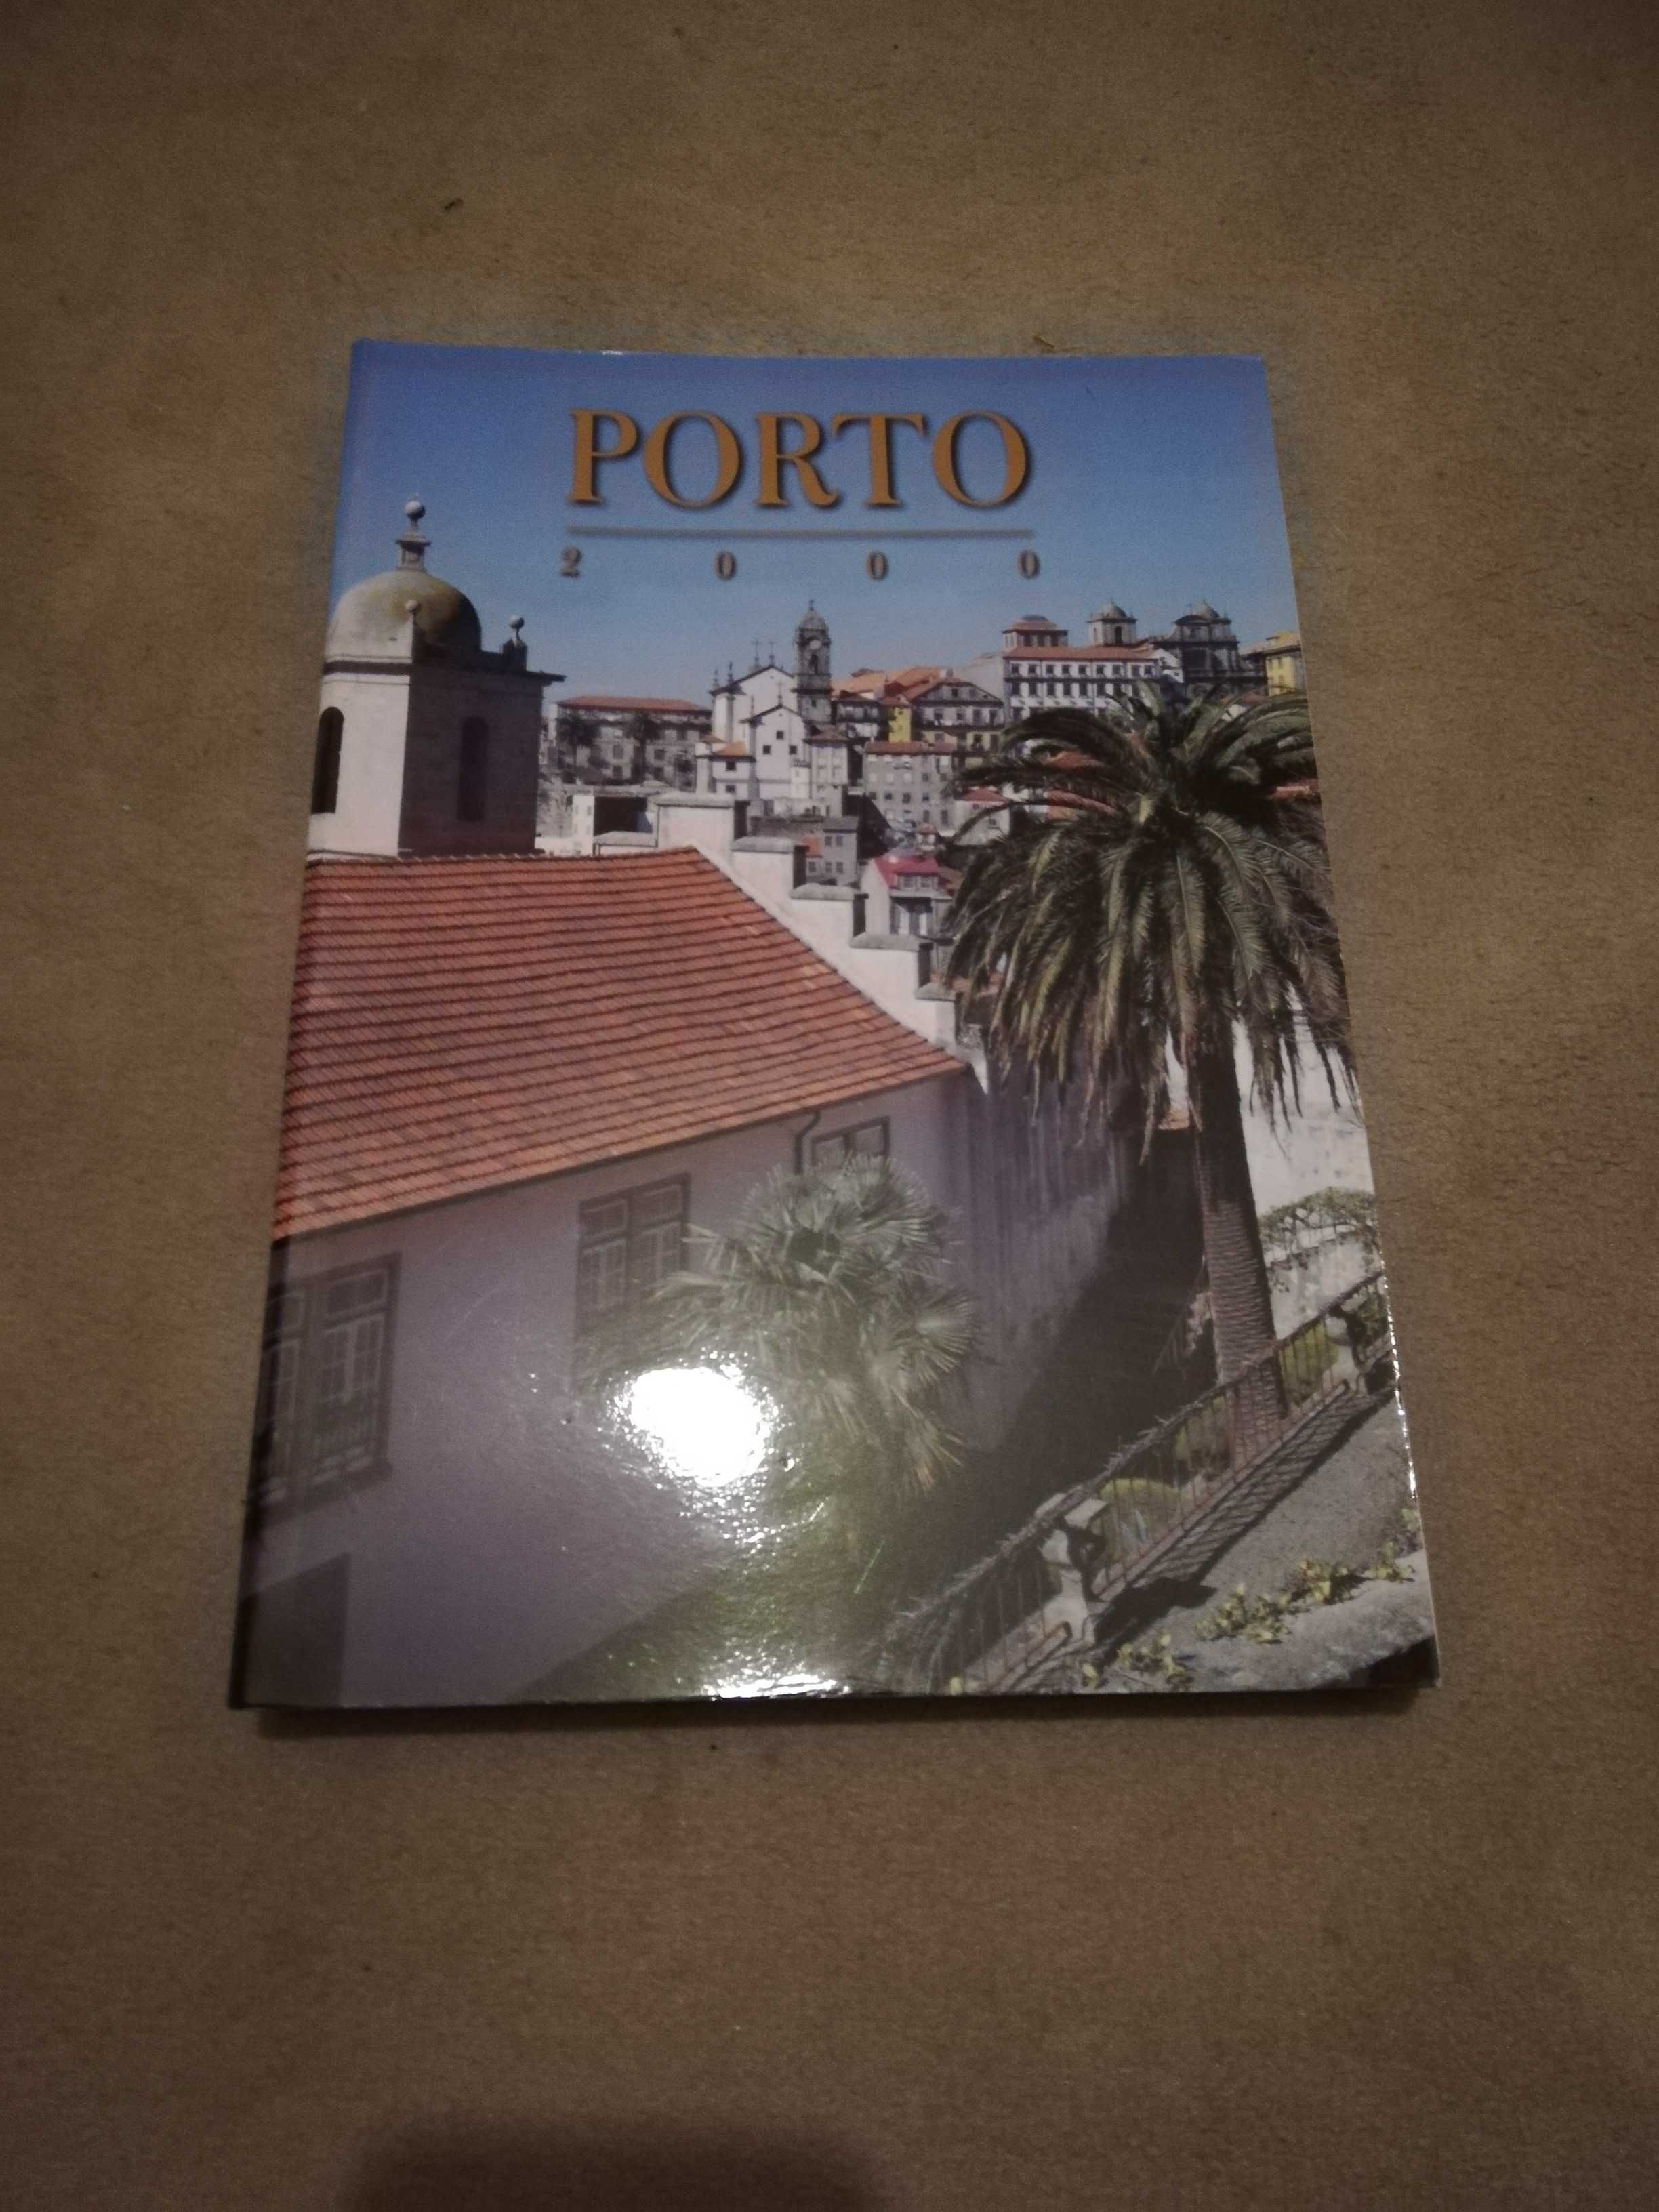 + BARATO Objetos sobre a história Cidade do Porto_quadros, livros, etc